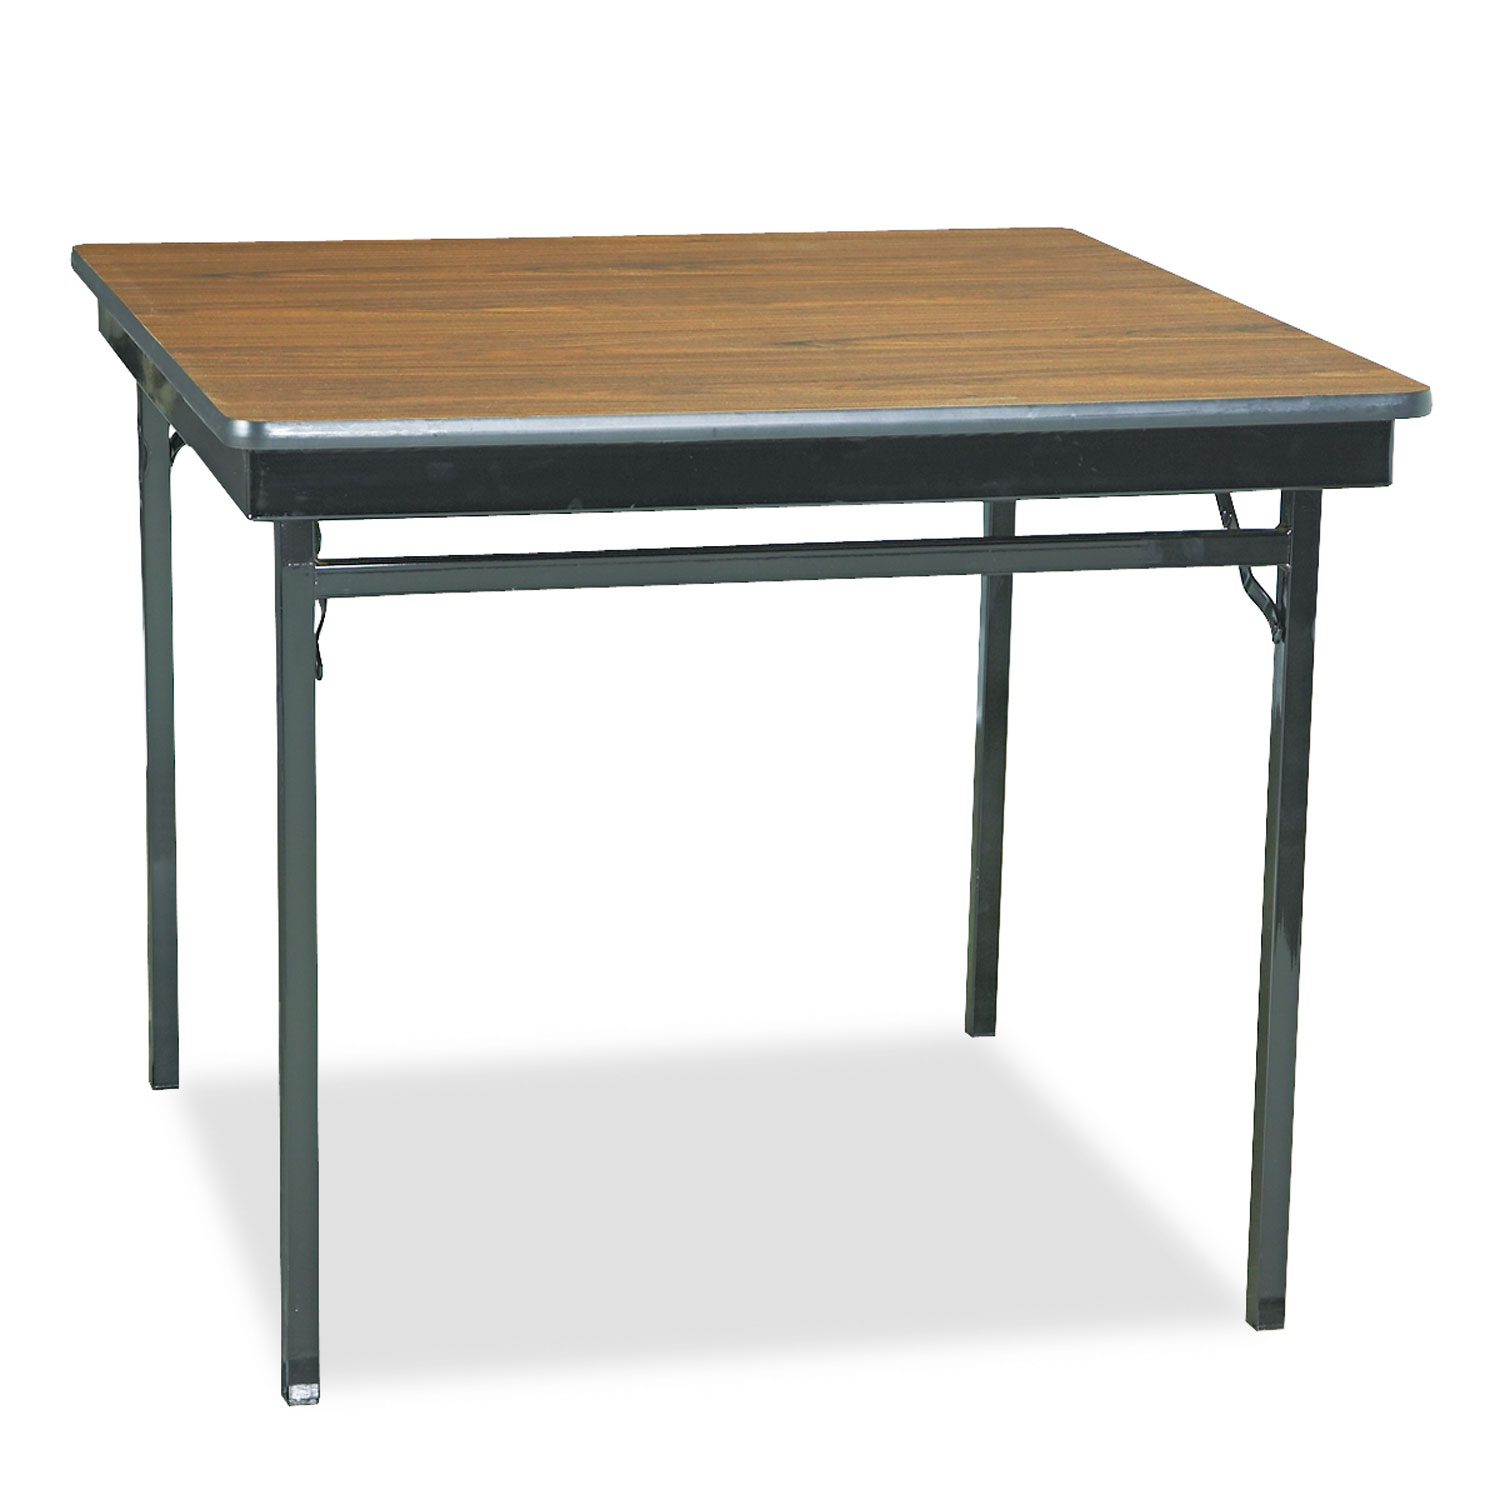  Barricks CL36WA Special Size Folding Table, Square, 36w x 36d x 30h, Walnut/Black (BRKCL36WA) 